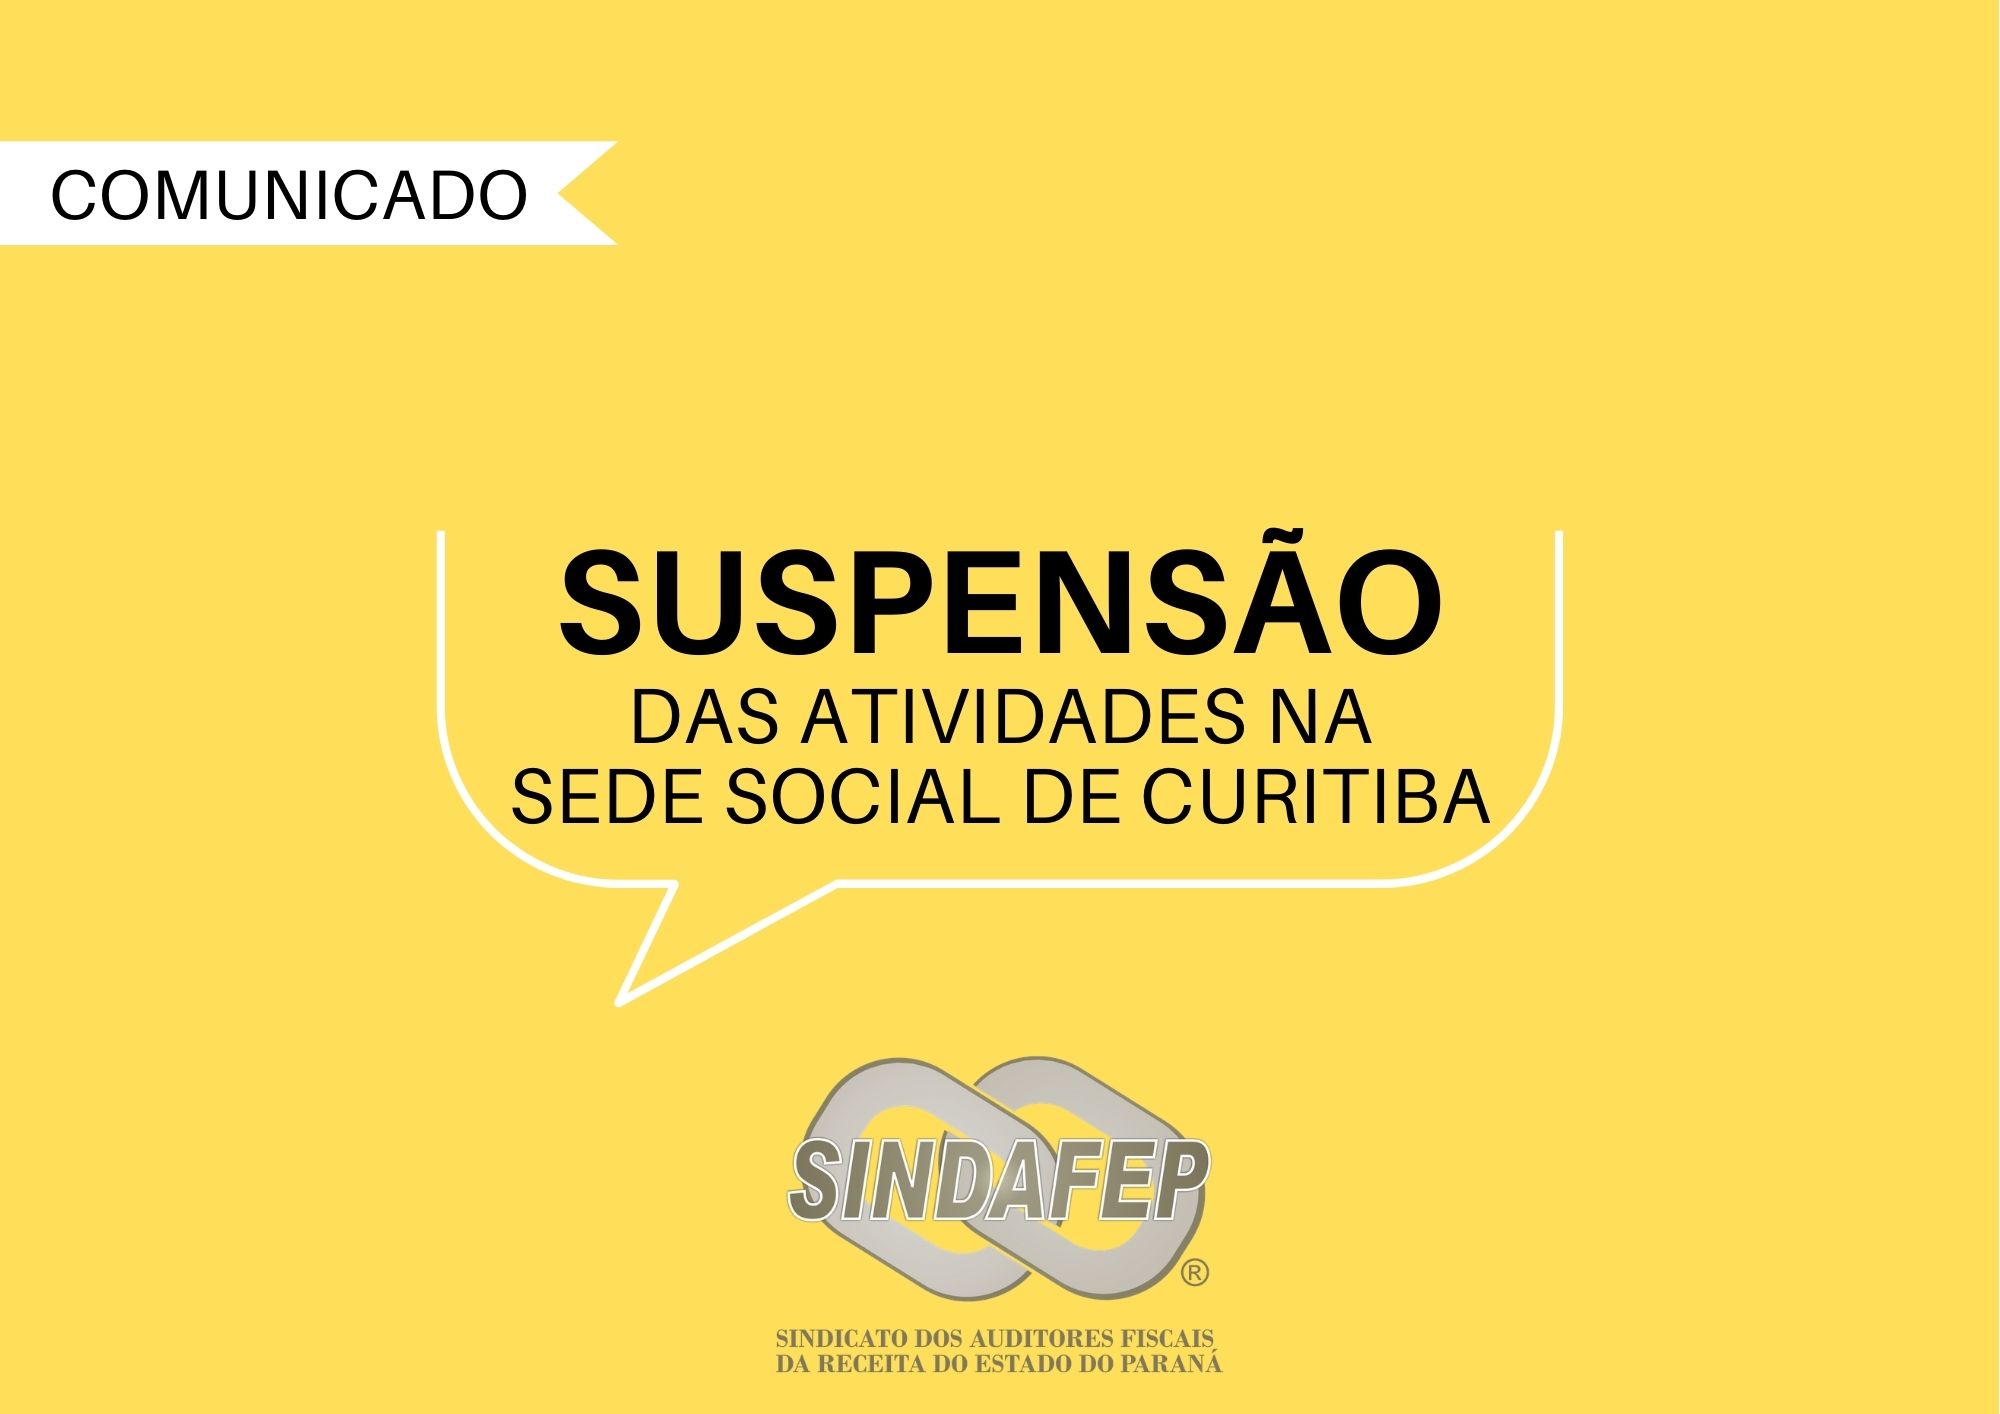 Sindafep prorroga suspensão das atividades na sede social de Curitiba por mais 30 dias